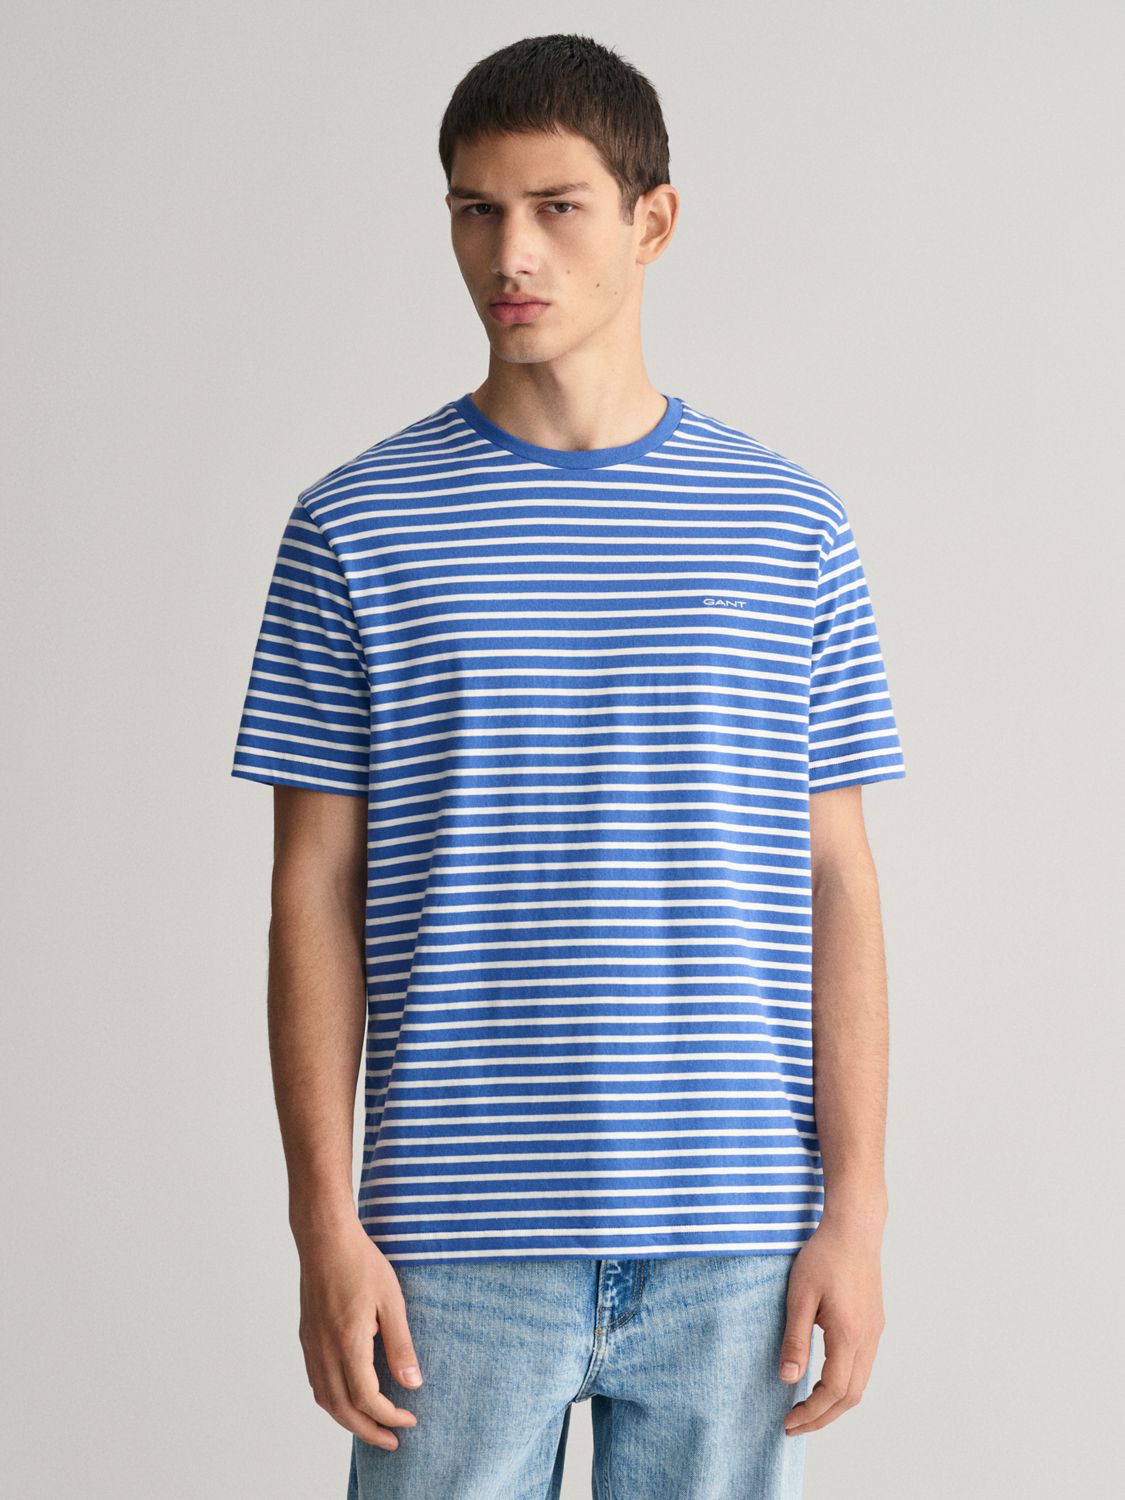 GANT Striped T-Shirt, Blue/White, L